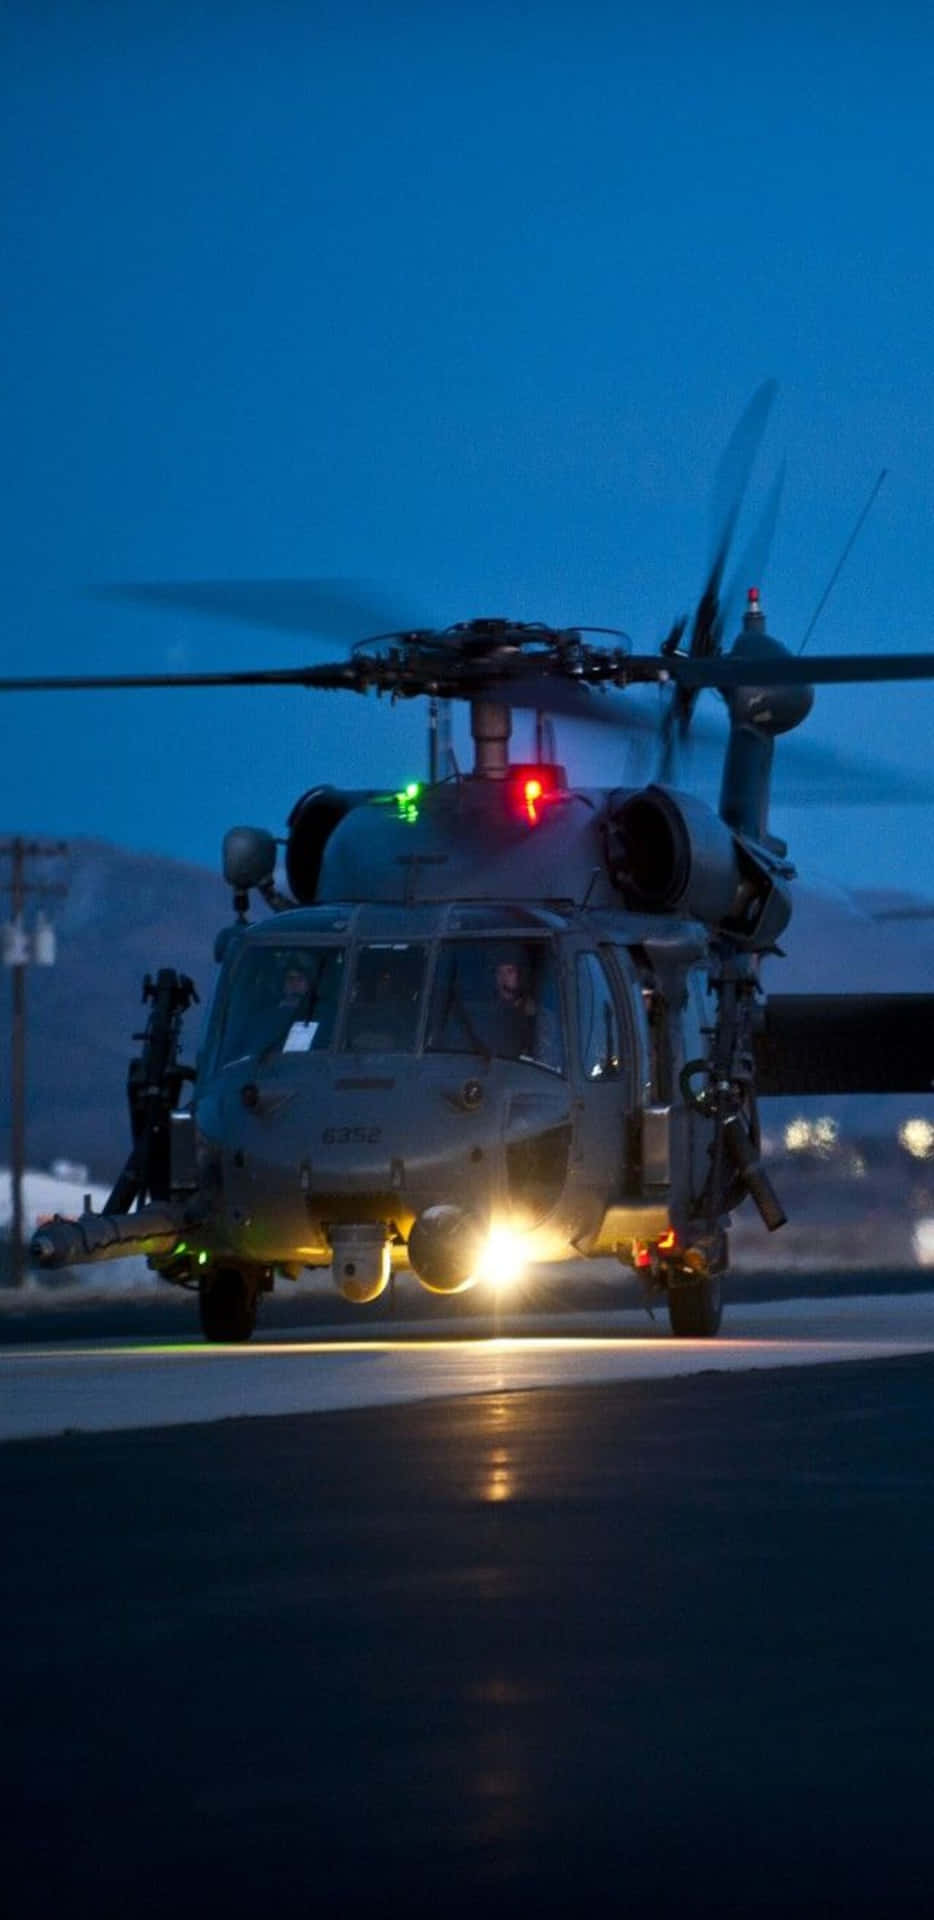 Pixel3xl Helikopter Bakgrund Sikorsky Uh-60 Black Hawk Vid Nattetid.